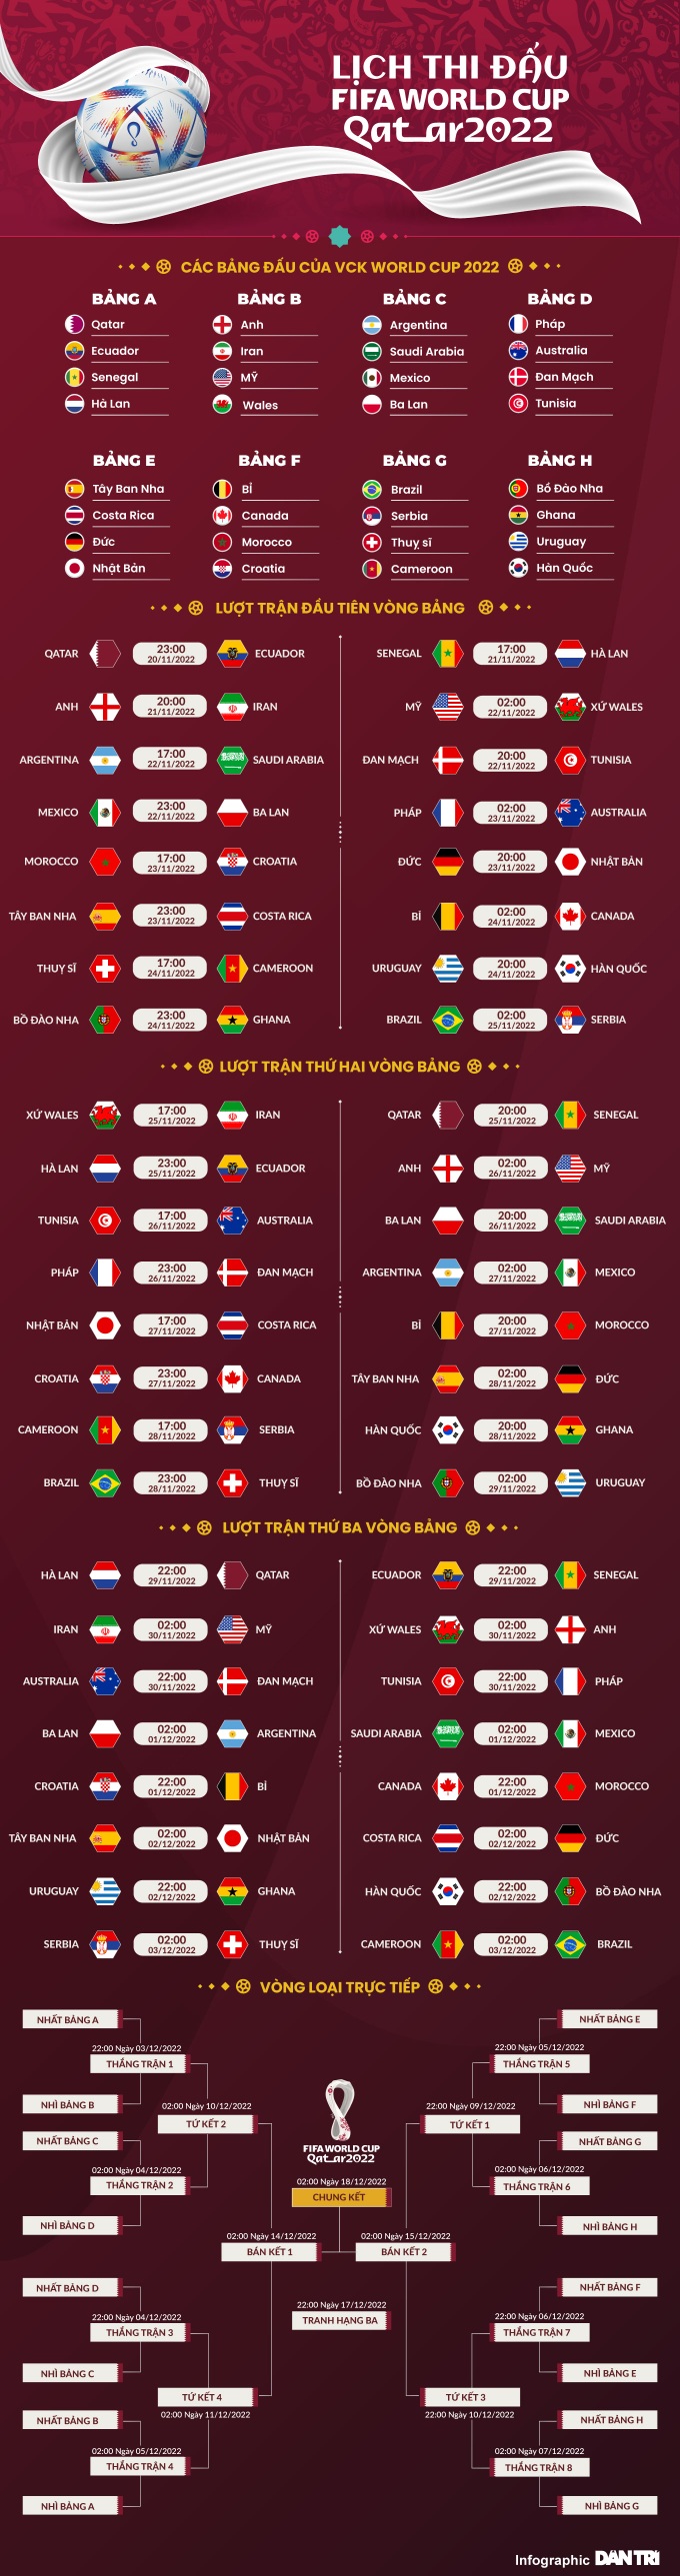 Lịch sử World Cup 2018: Chức vô địch hoàn hảo của người Pháp - 5